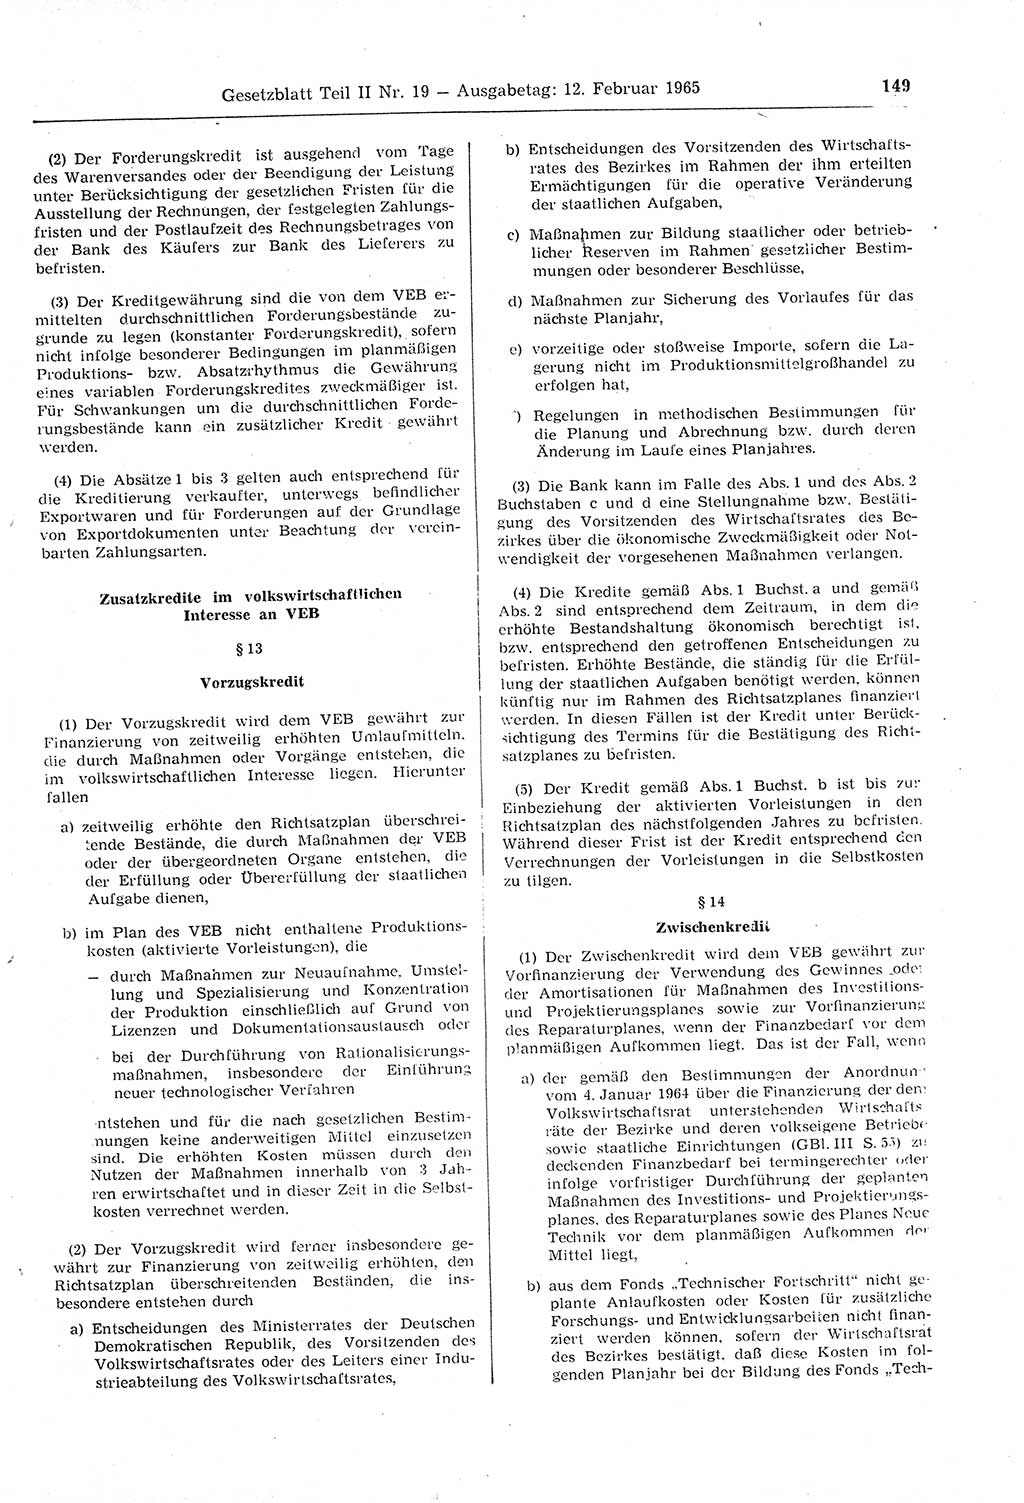 Gesetzblatt (GBl.) der Deutschen Demokratischen Republik (DDR) Teil ⅠⅠ 1965, Seite 149 (GBl. DDR ⅠⅠ 1965, S. 149)